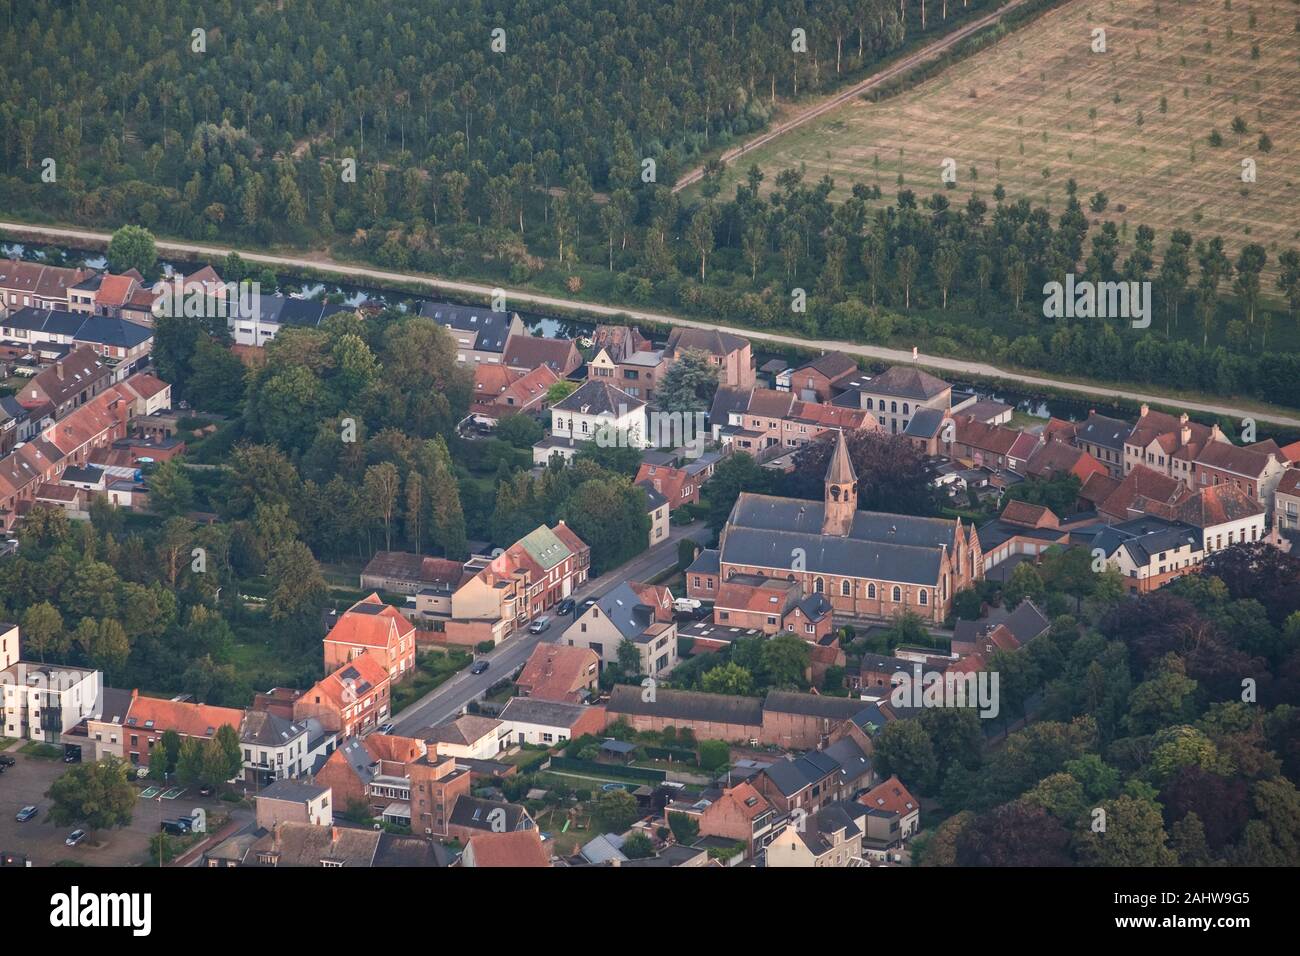 La chiesa di Sant Antonio domina lo skyline di Moerbeke nel East-Flanders. Dietro, un canale e filari di alberi formano una transizione da una zona rurale. Foto Stock